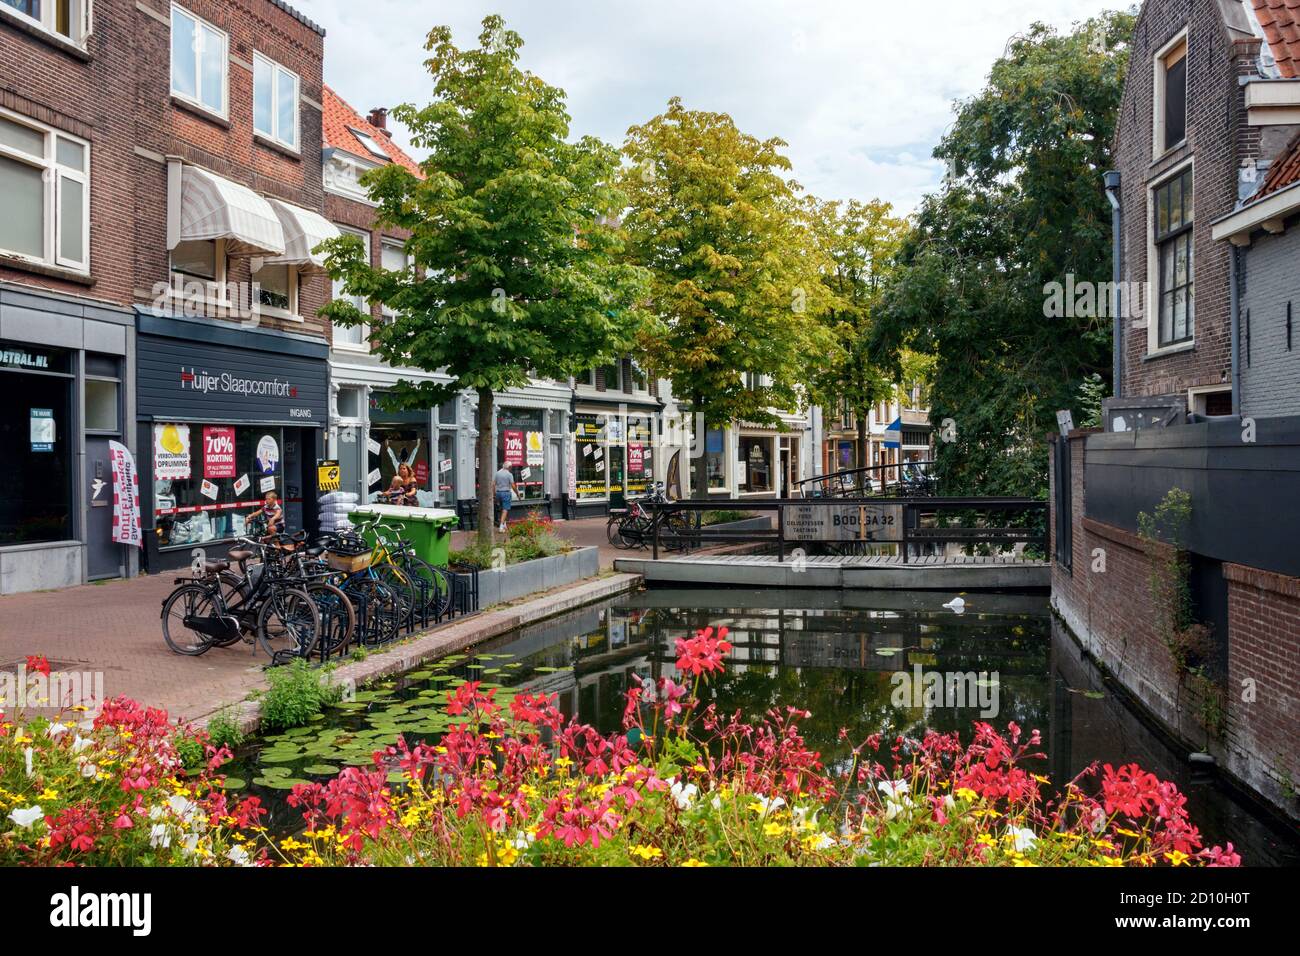 Vista sul centro storico di Gouda. Zeugstraat con canale, negozi vari e fiori fioriti in un pomeriggio di sole. Olanda meridionale, Paesi Bassi. Foto Stock